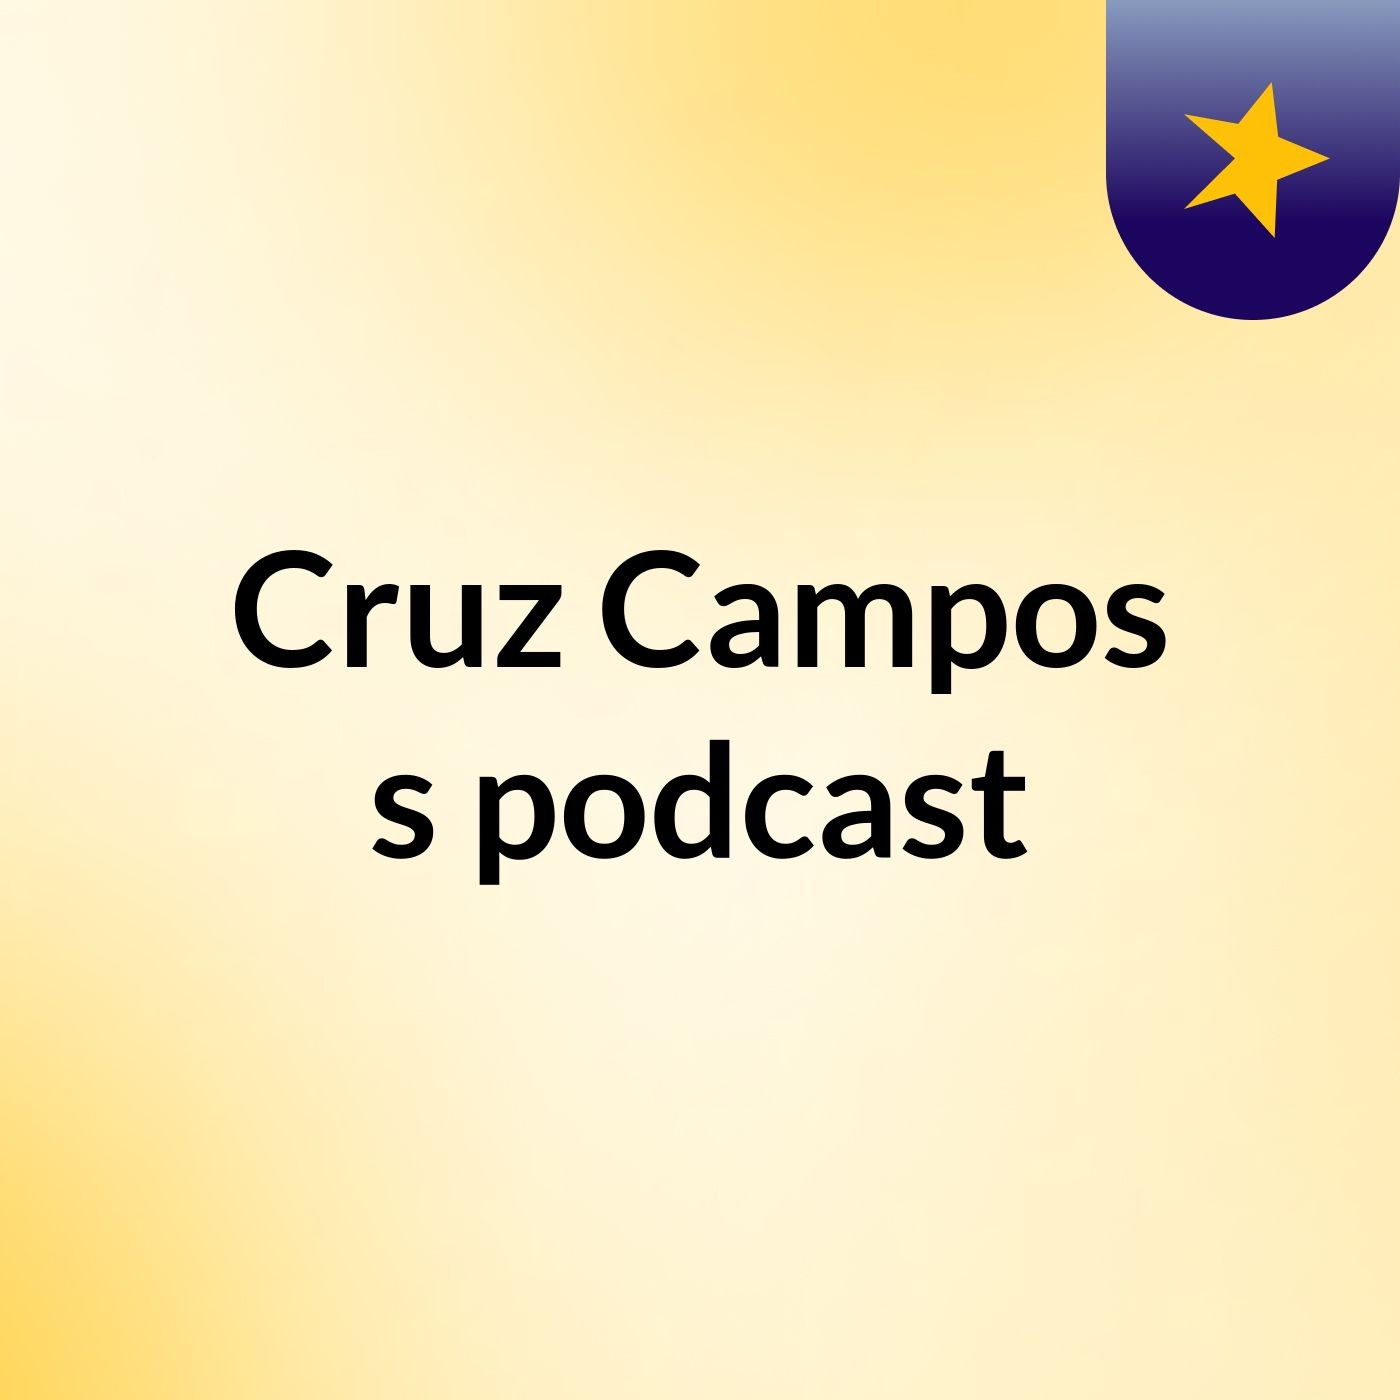 Cruz Campos's podcast